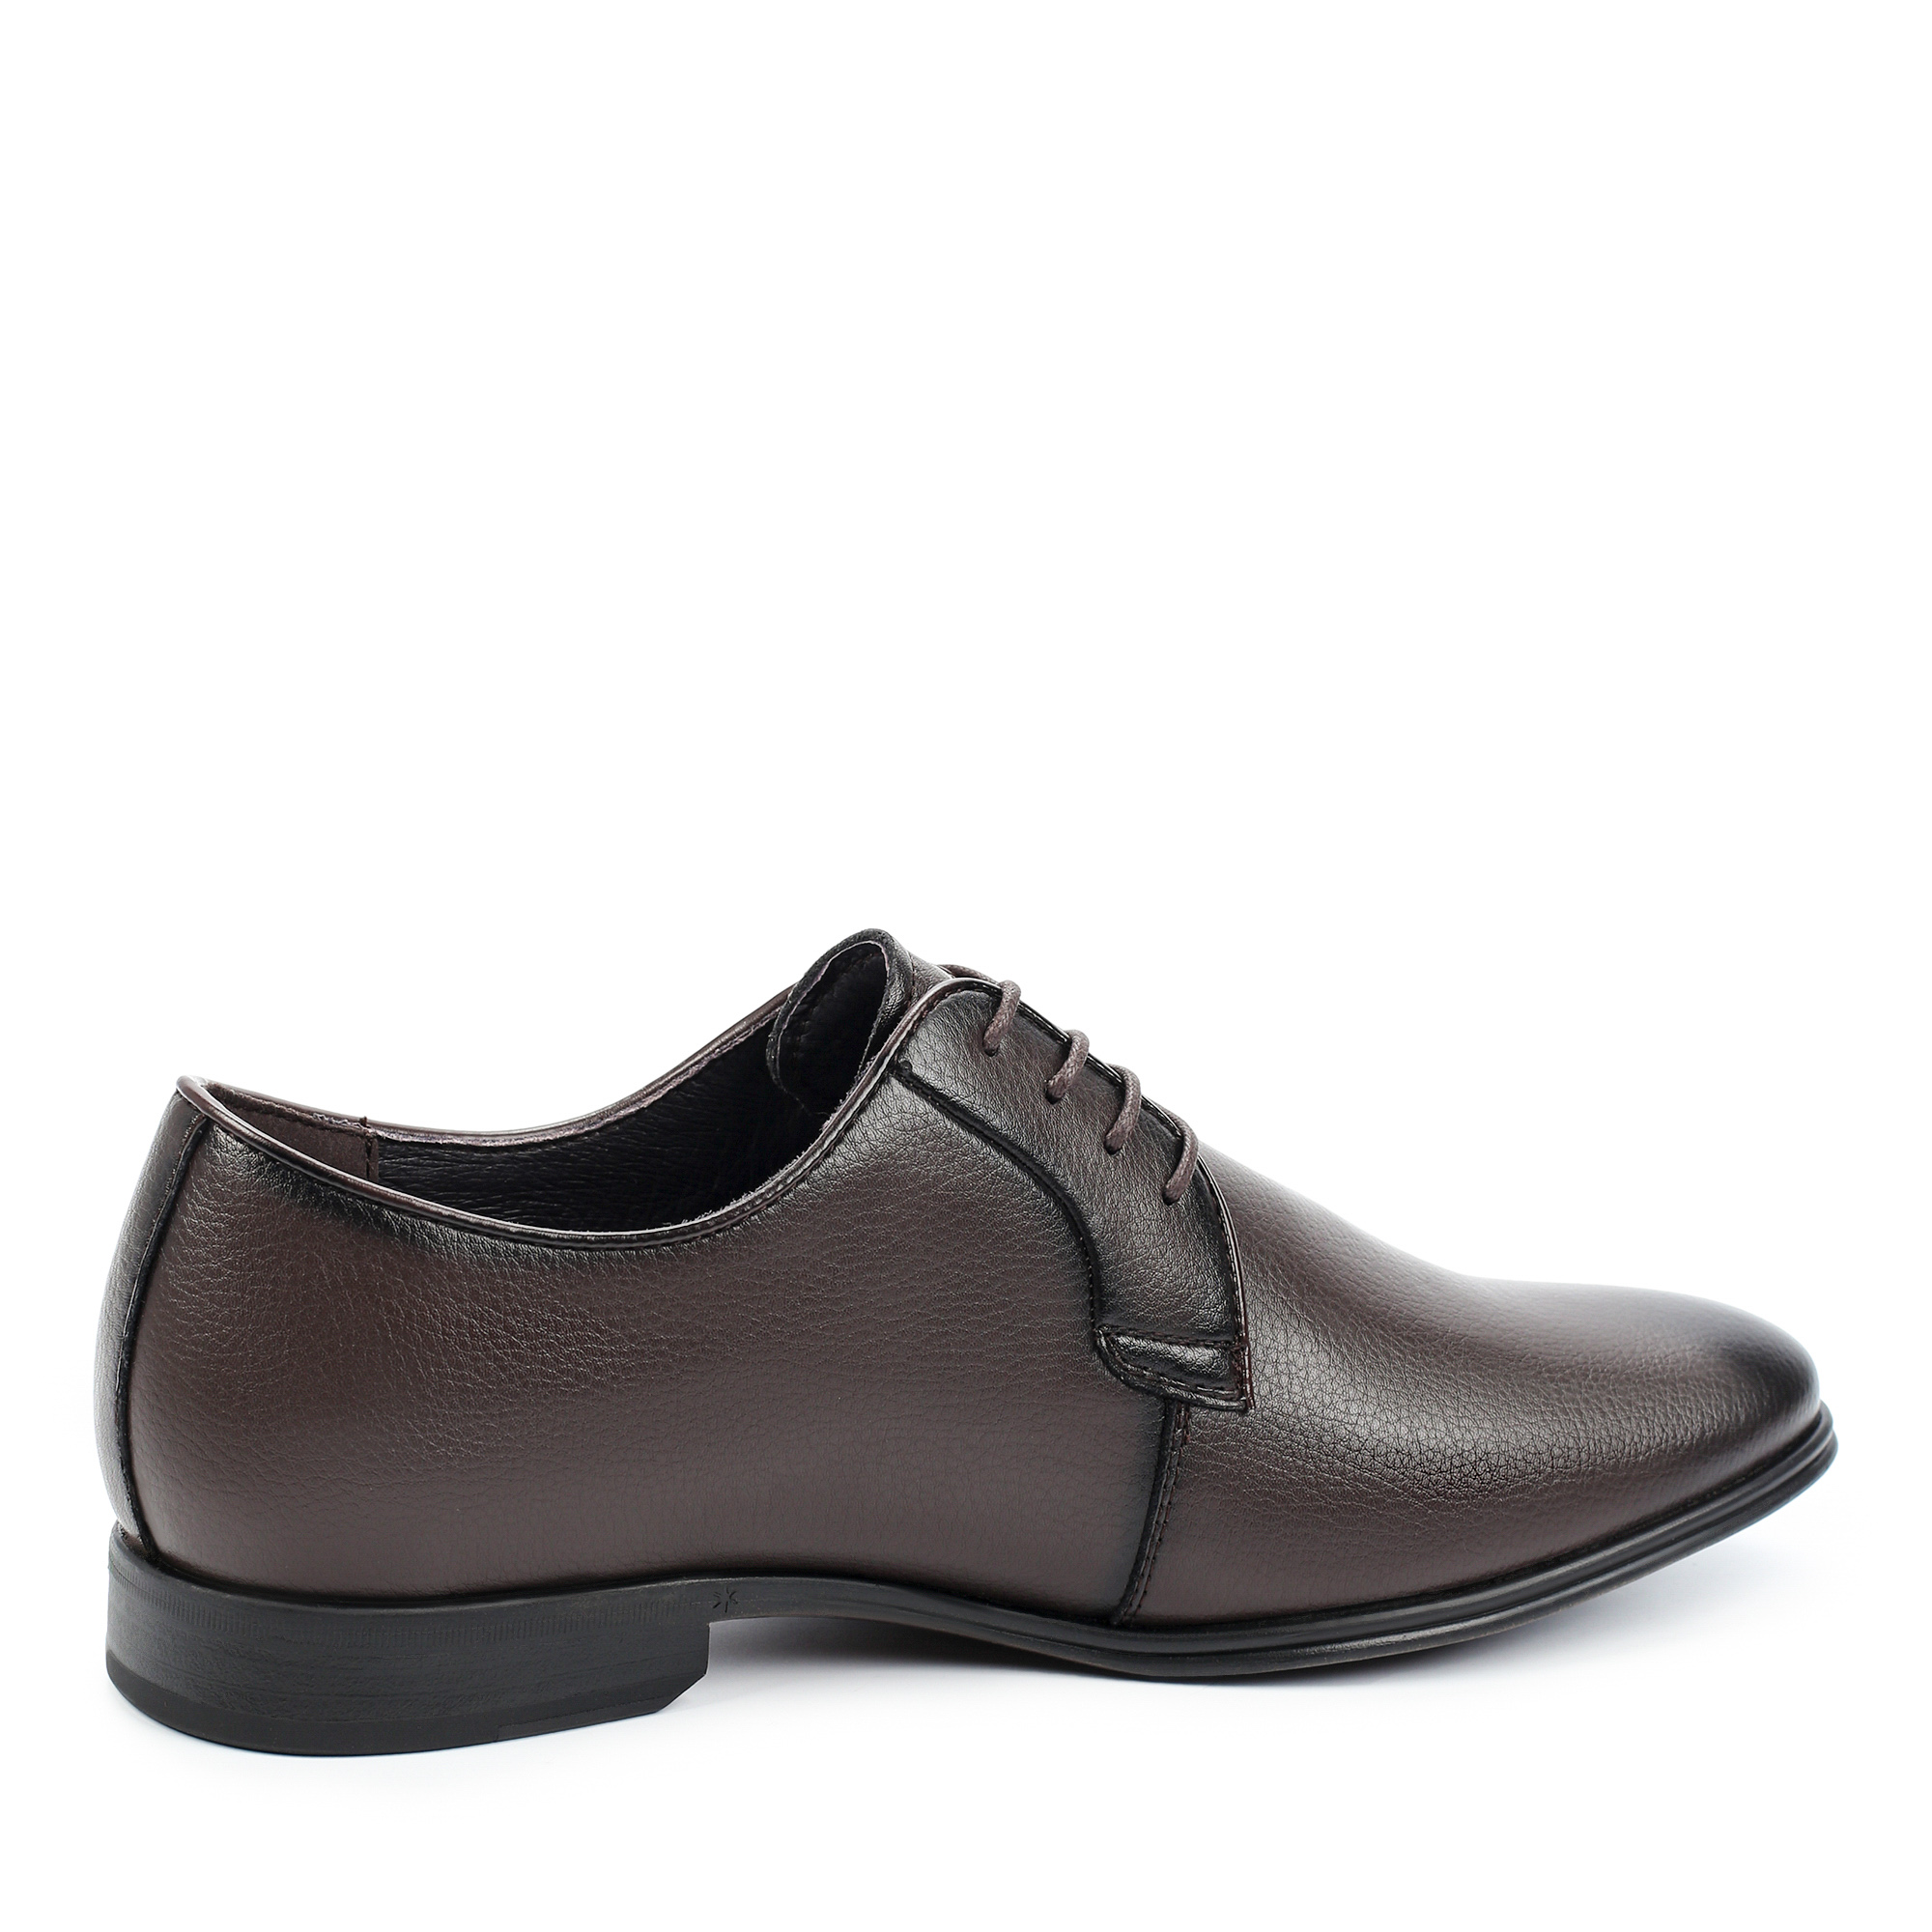 Туфли/полуботинки Thomas Munz 073-747A-2109, цвет темно-коричневый, размер 42 - фото 3